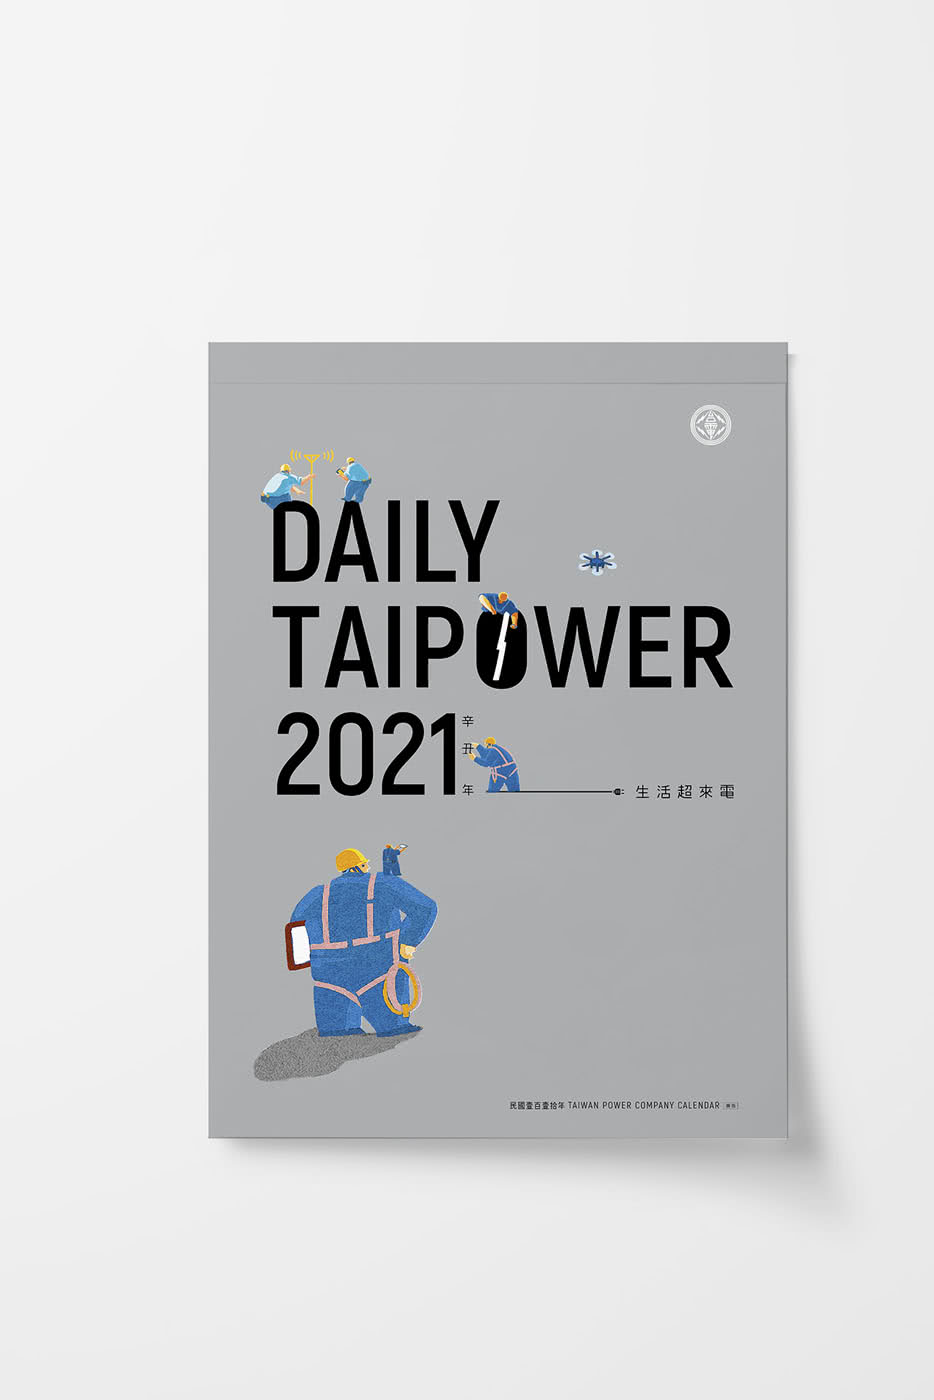 台電「DAILY TAIPOWER 2021-生活超來電」月曆